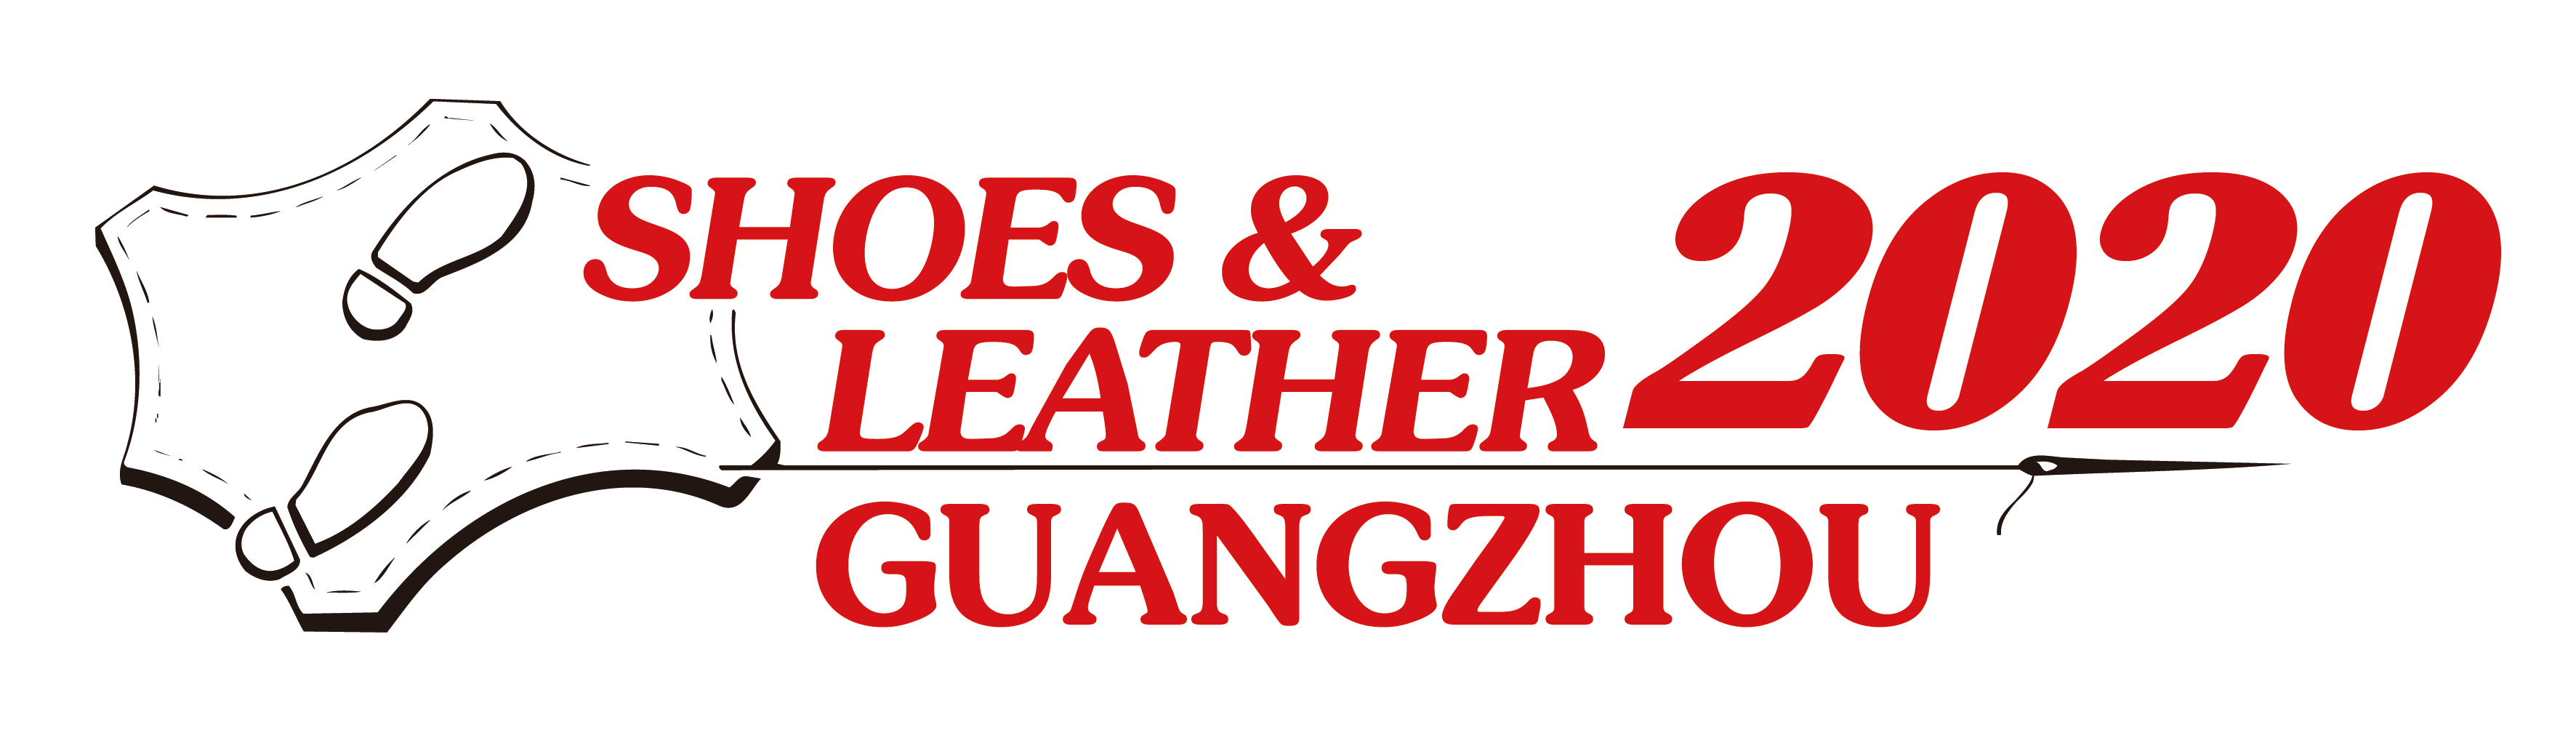 Shoes & Leather - Guangzhou, Guangzhou, Guangdong, China